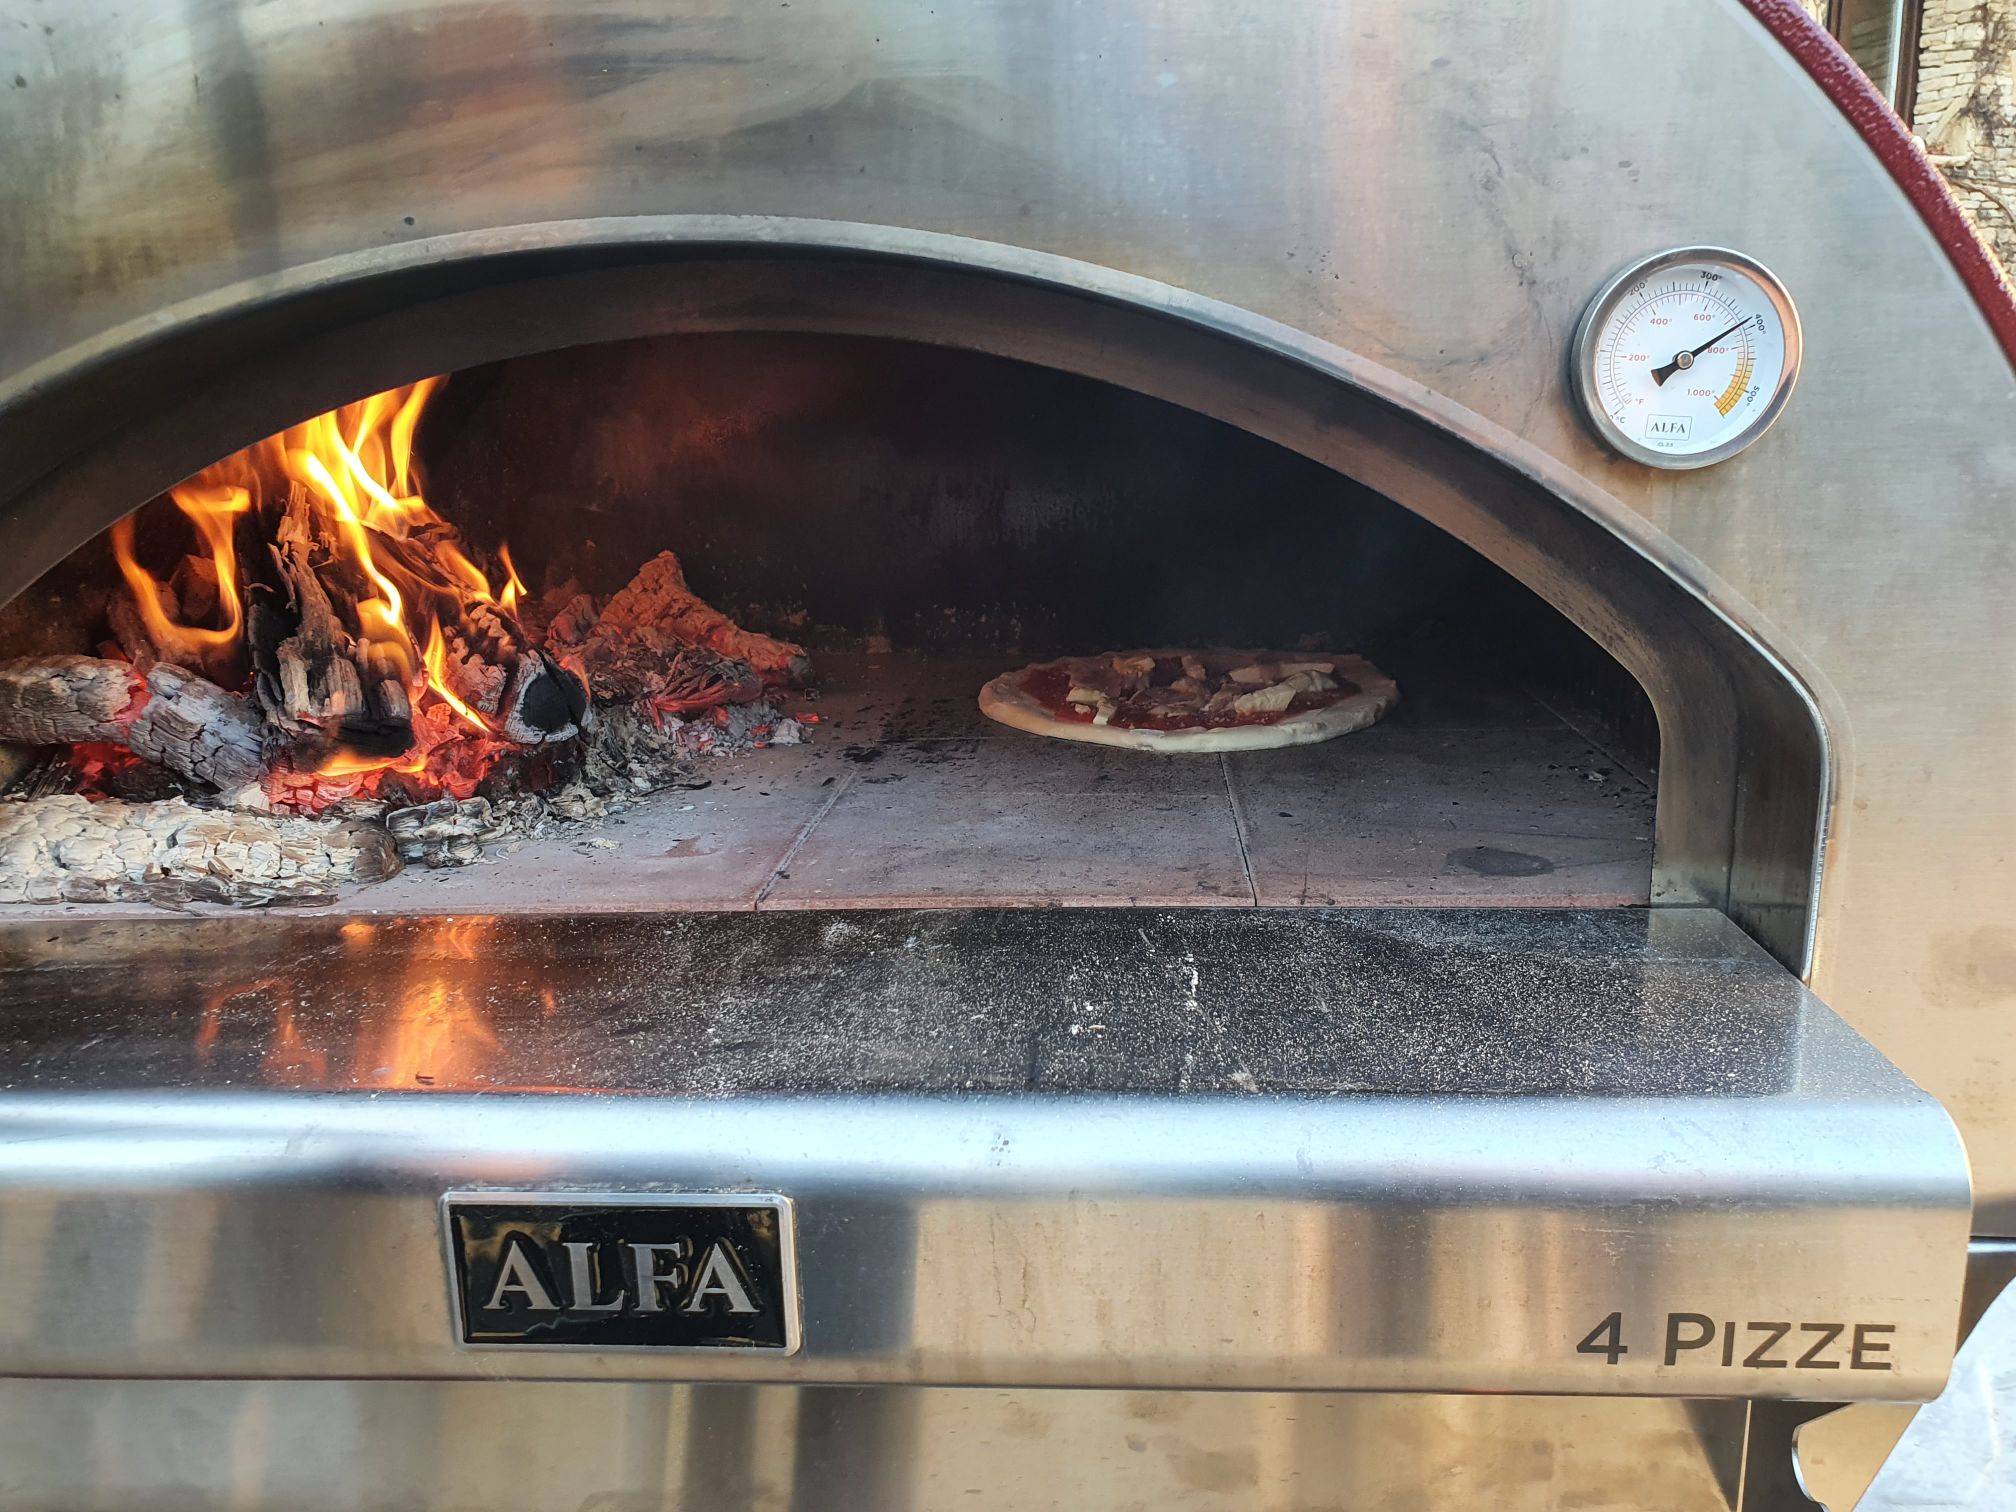 Nápolyi típusú pizza Alfa Forni kemencében